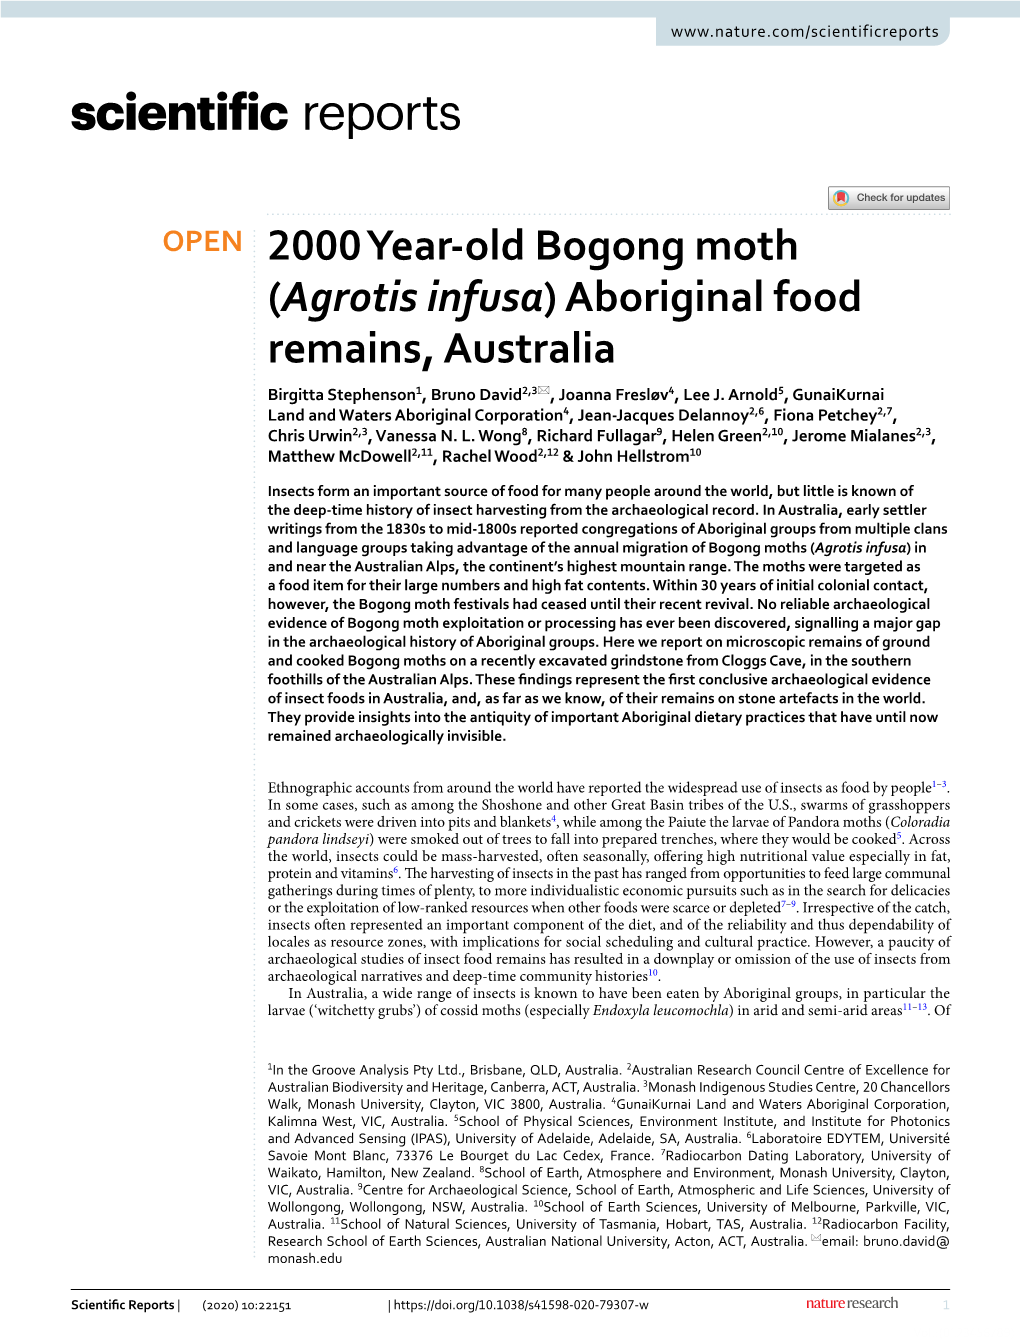 2000 Year-Old Bogong Moth (Agrotis Infusa)